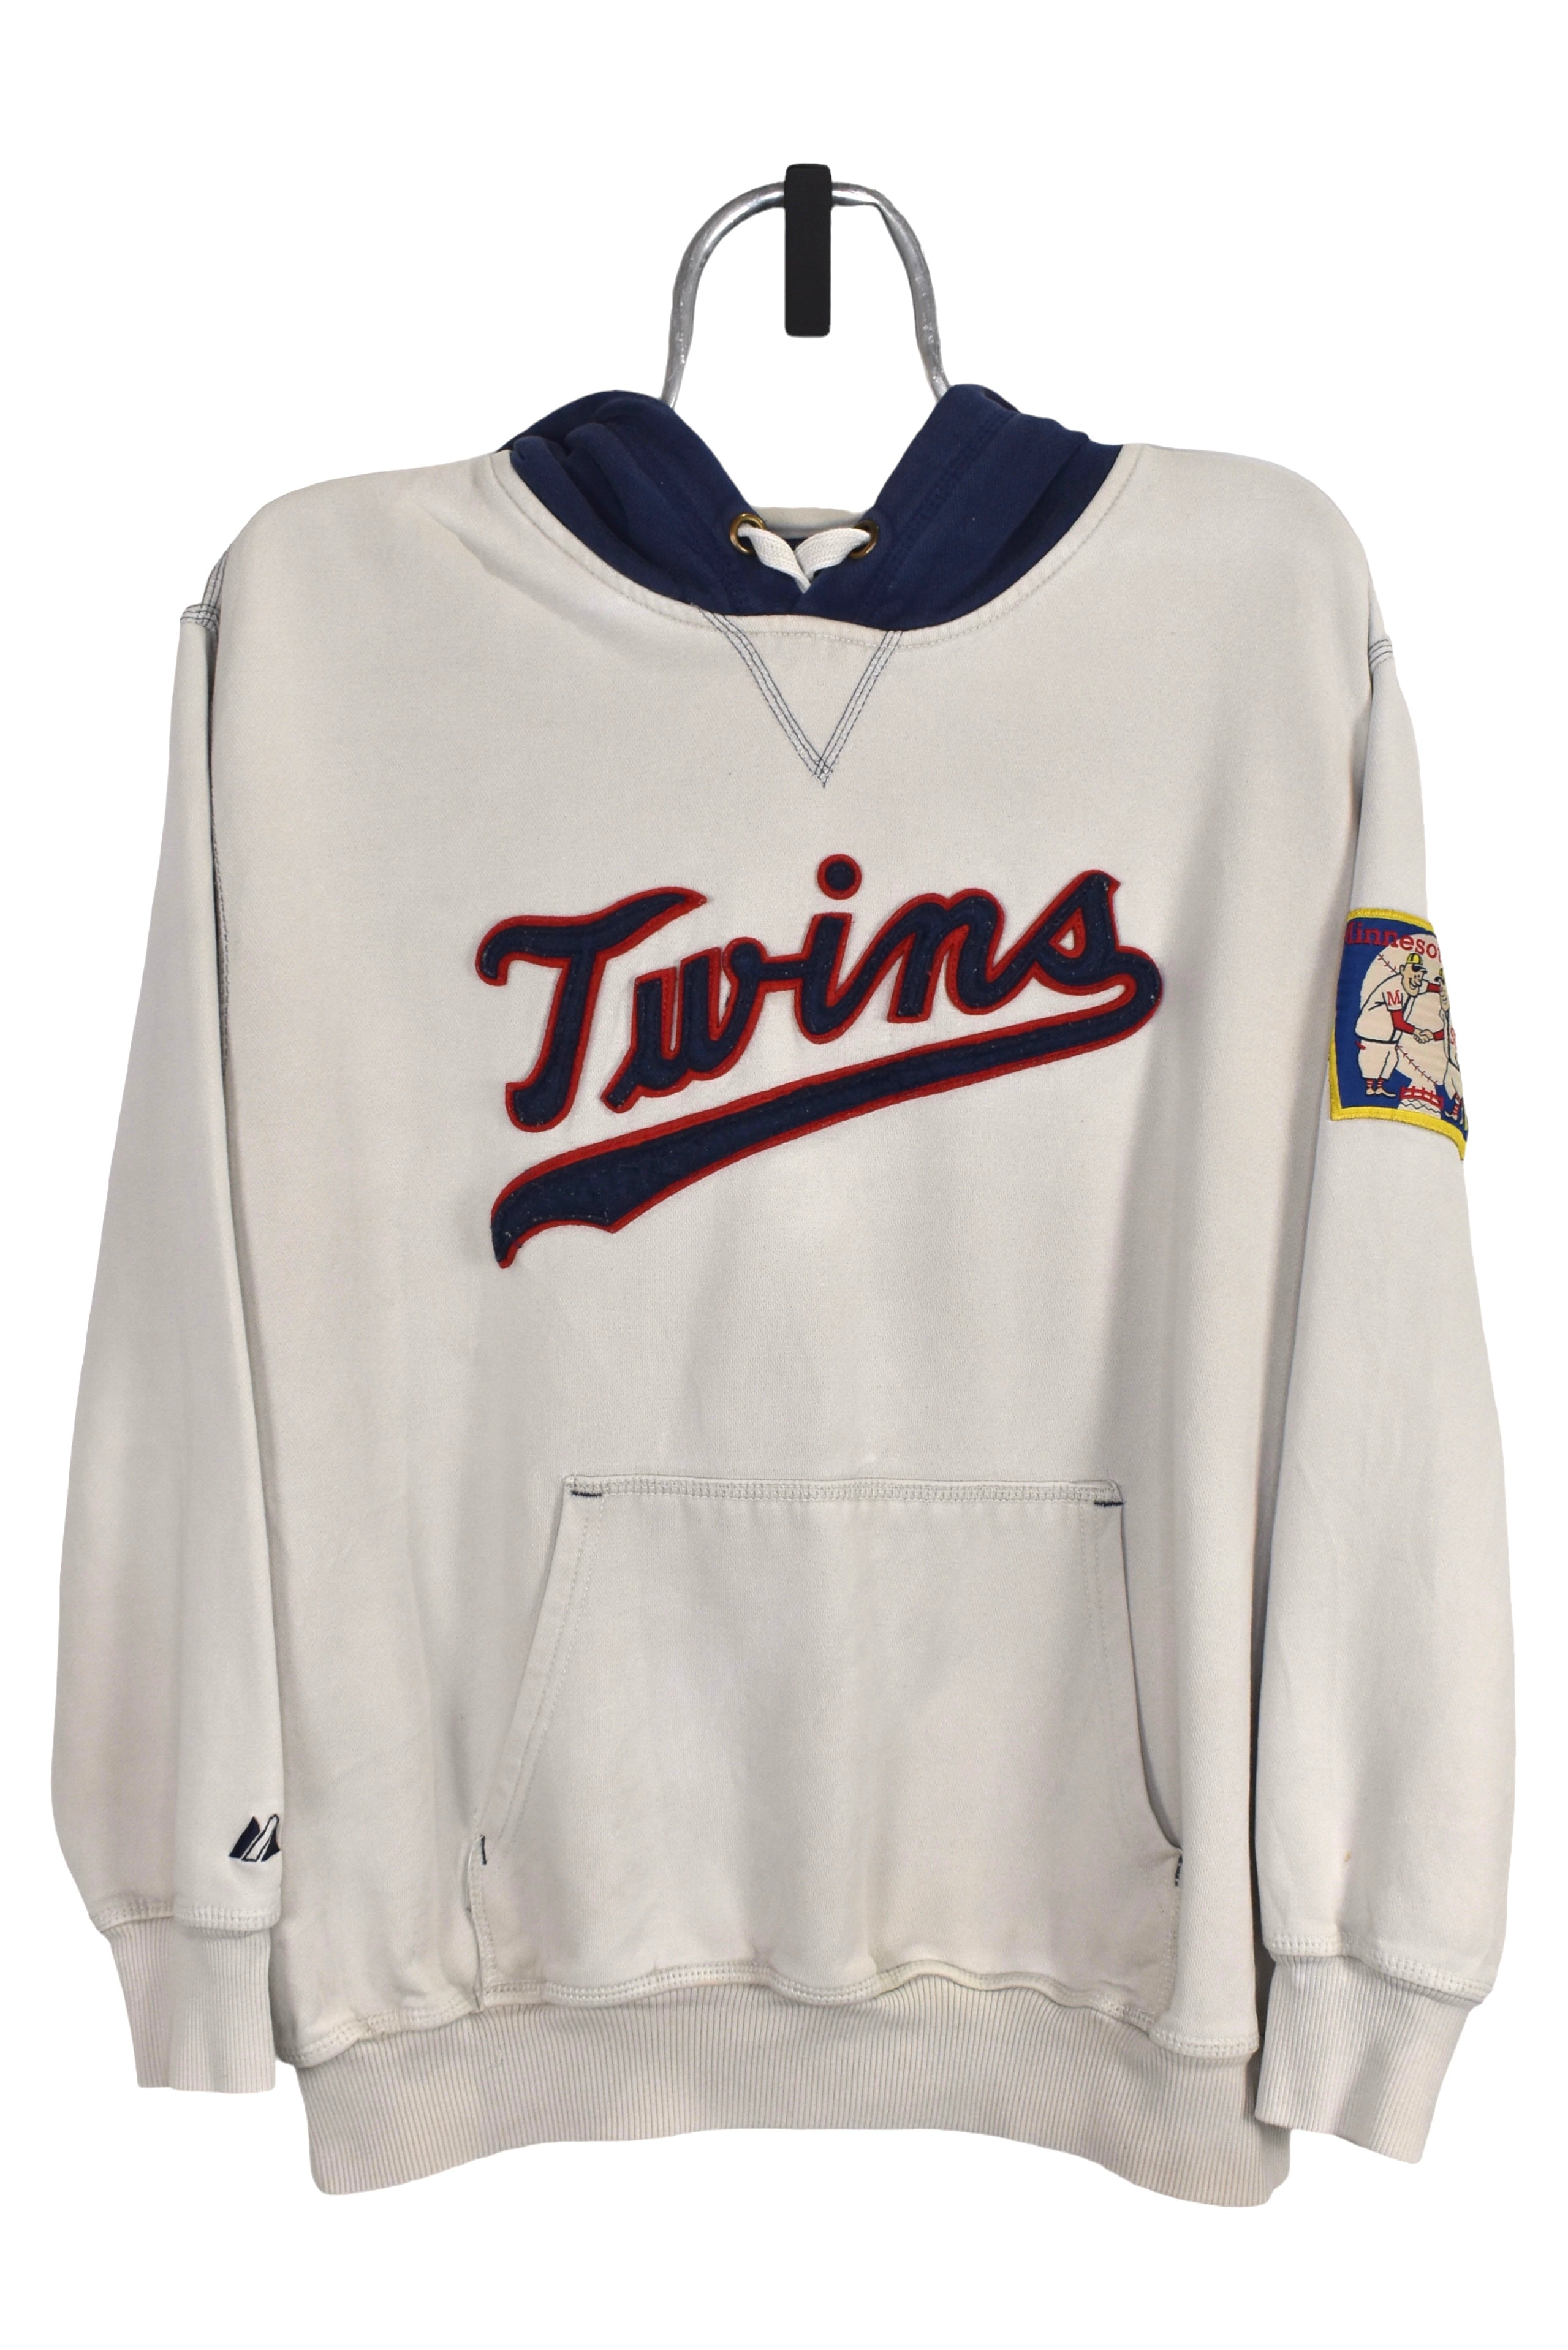 Vintage Minnesota Twins hoodie (L), cream MLB sweatshirt